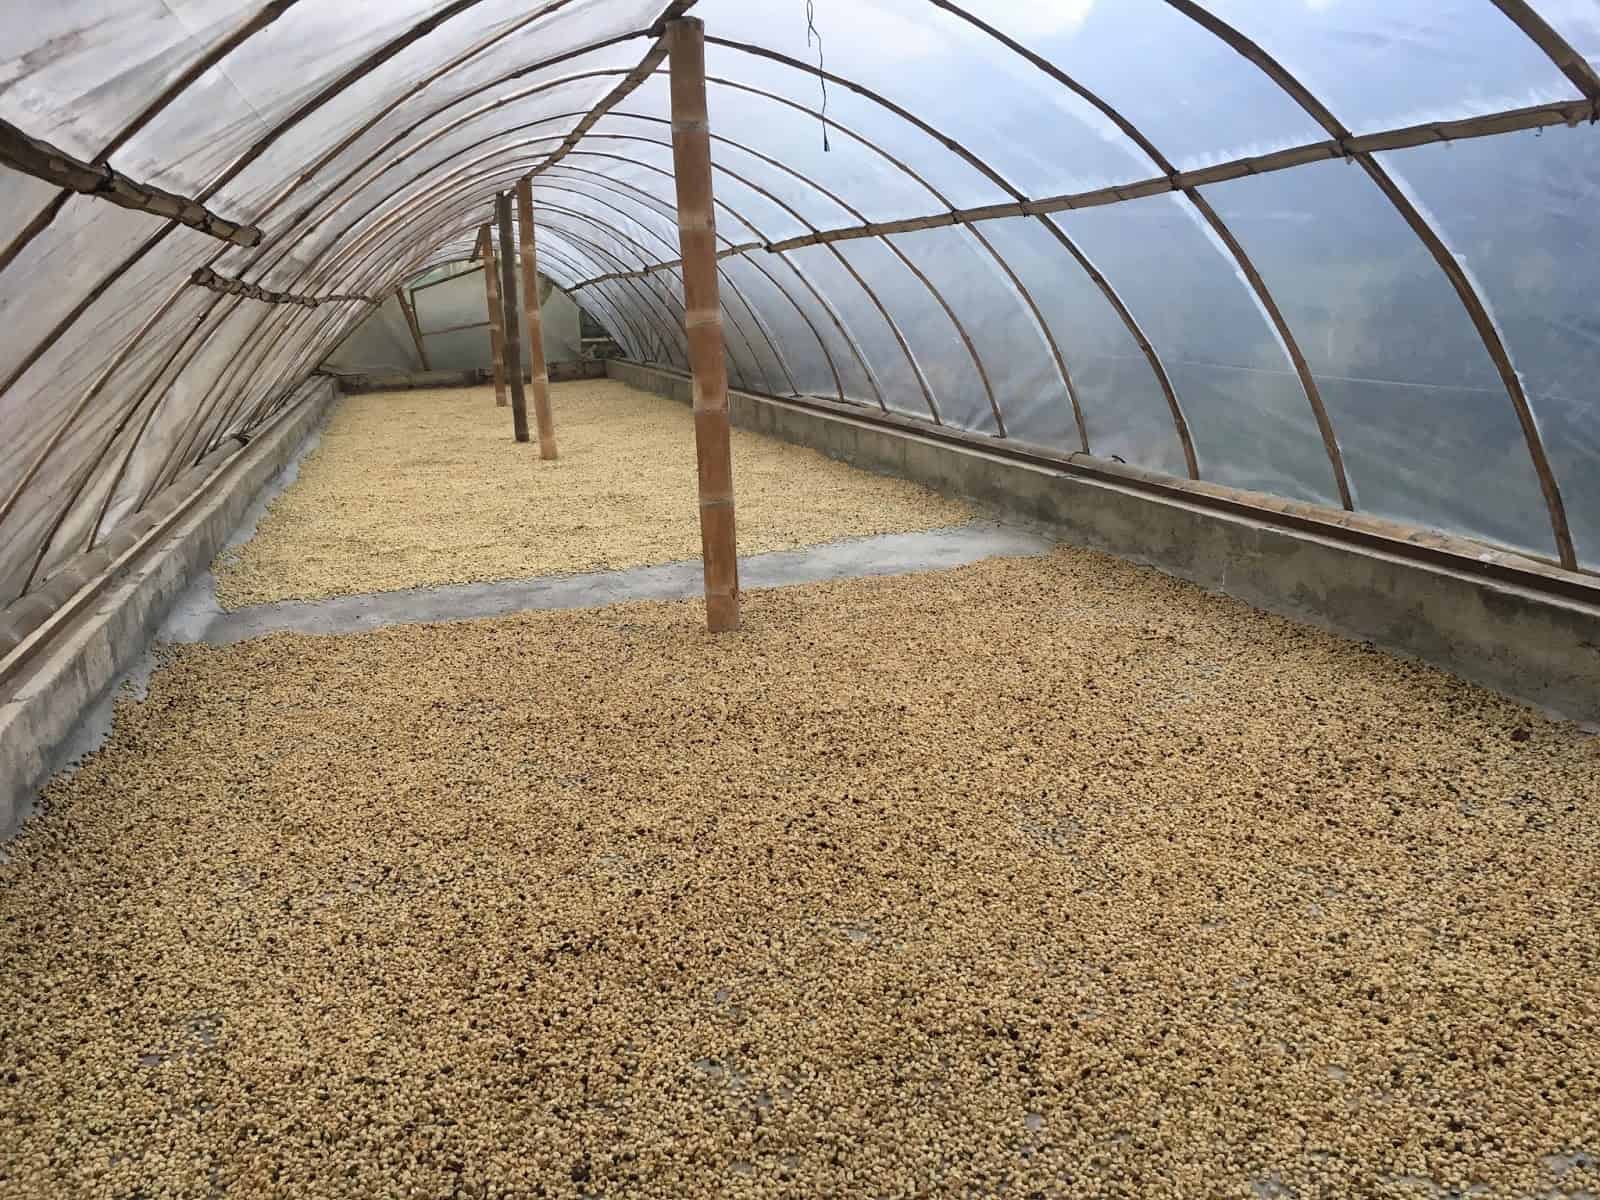 Coffee processing area at Finca El Ocaso near Salento, Quindío, Colombia